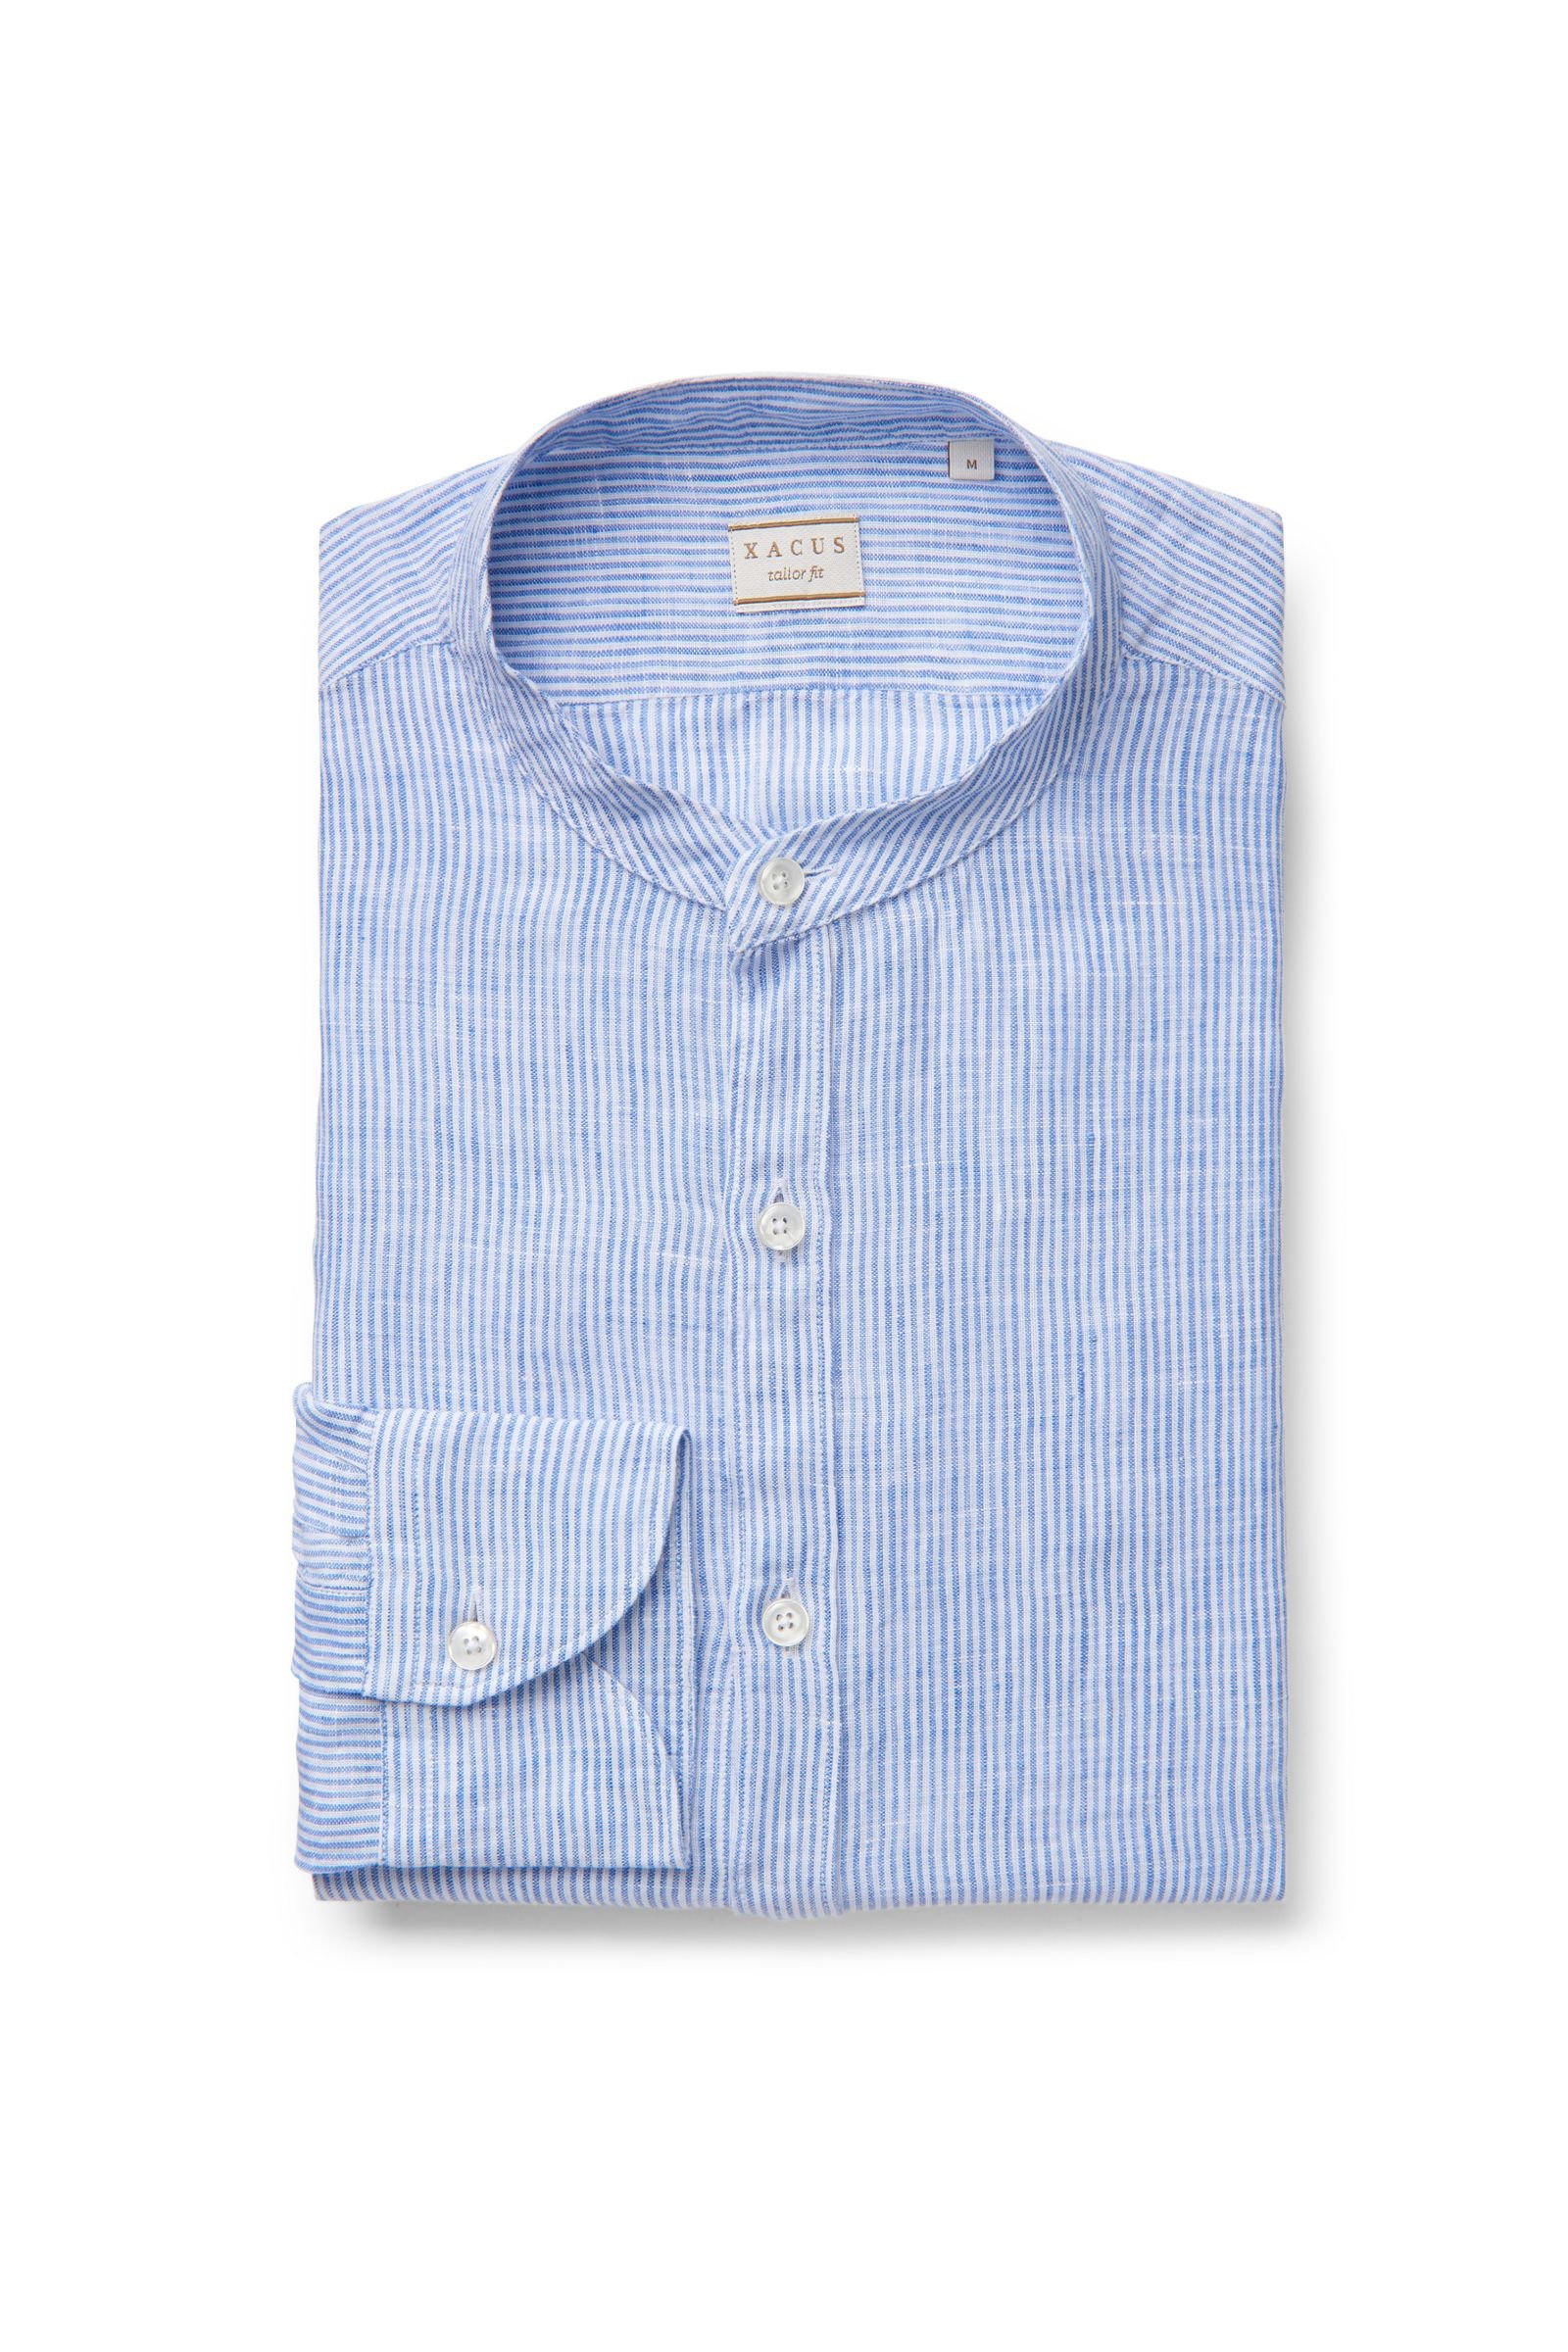 Linen shirt 'tailored fit' Grandad collar blue striped